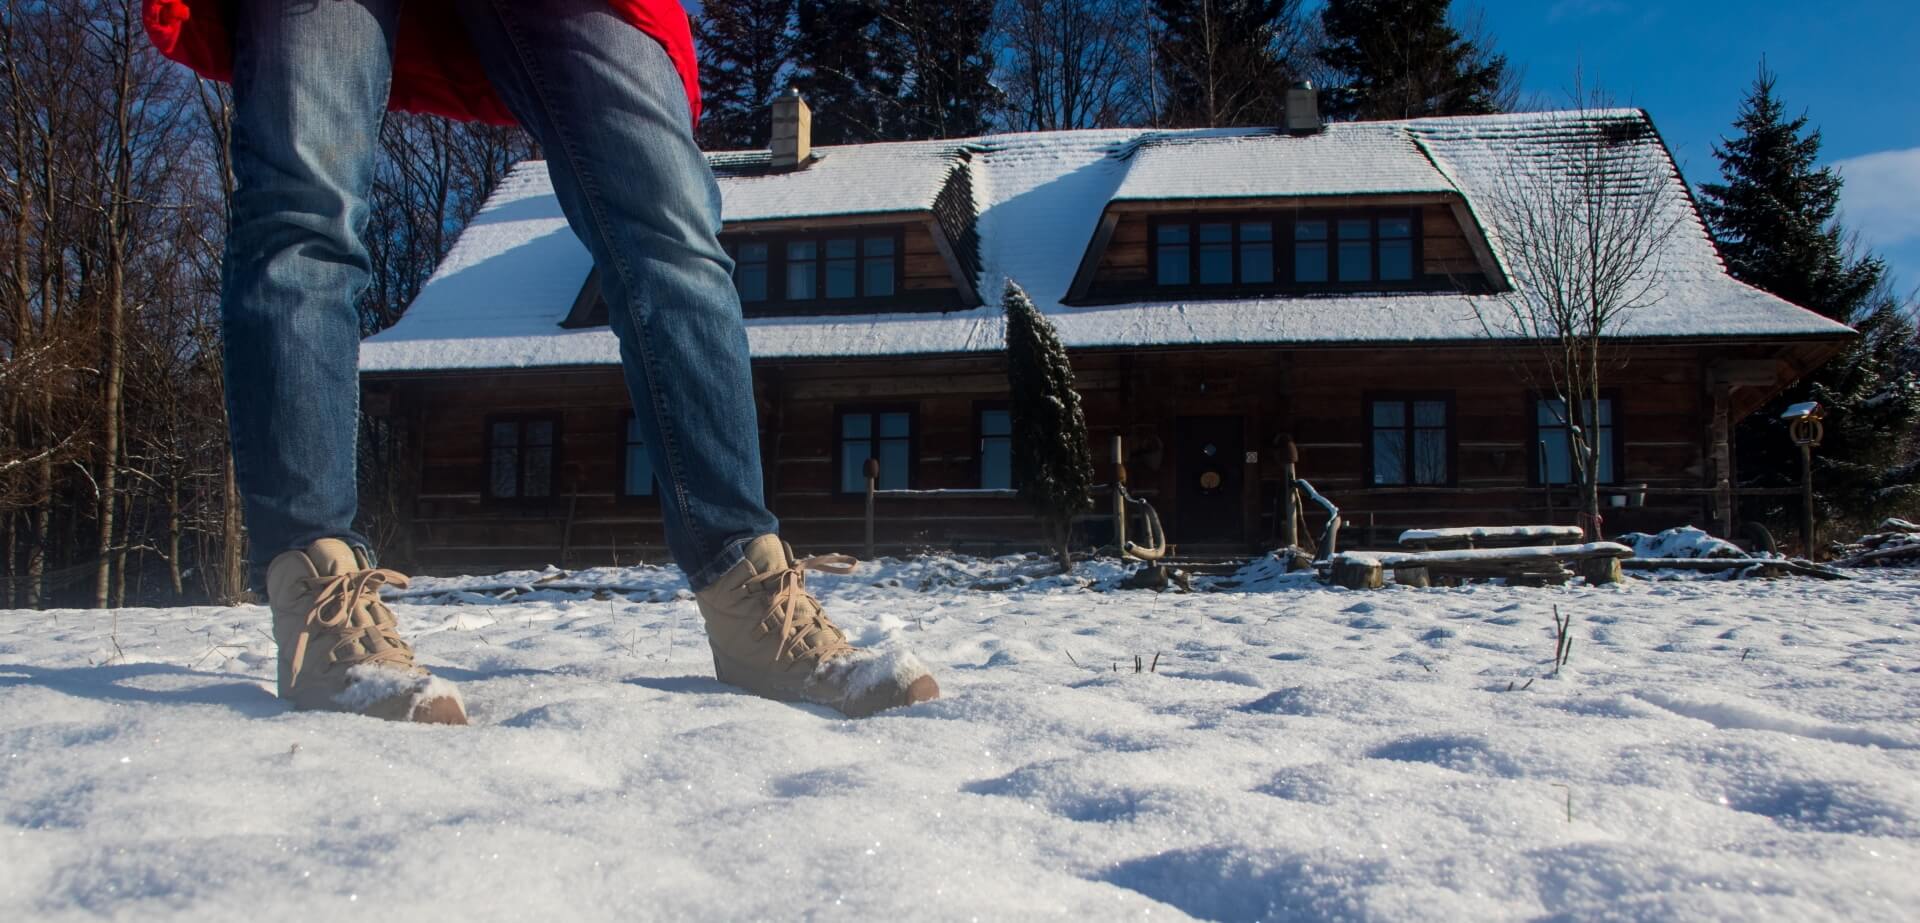 Keen Terradora Ankle Boot to model ktory swietnie sprawdzi sie w zimowych warunkach